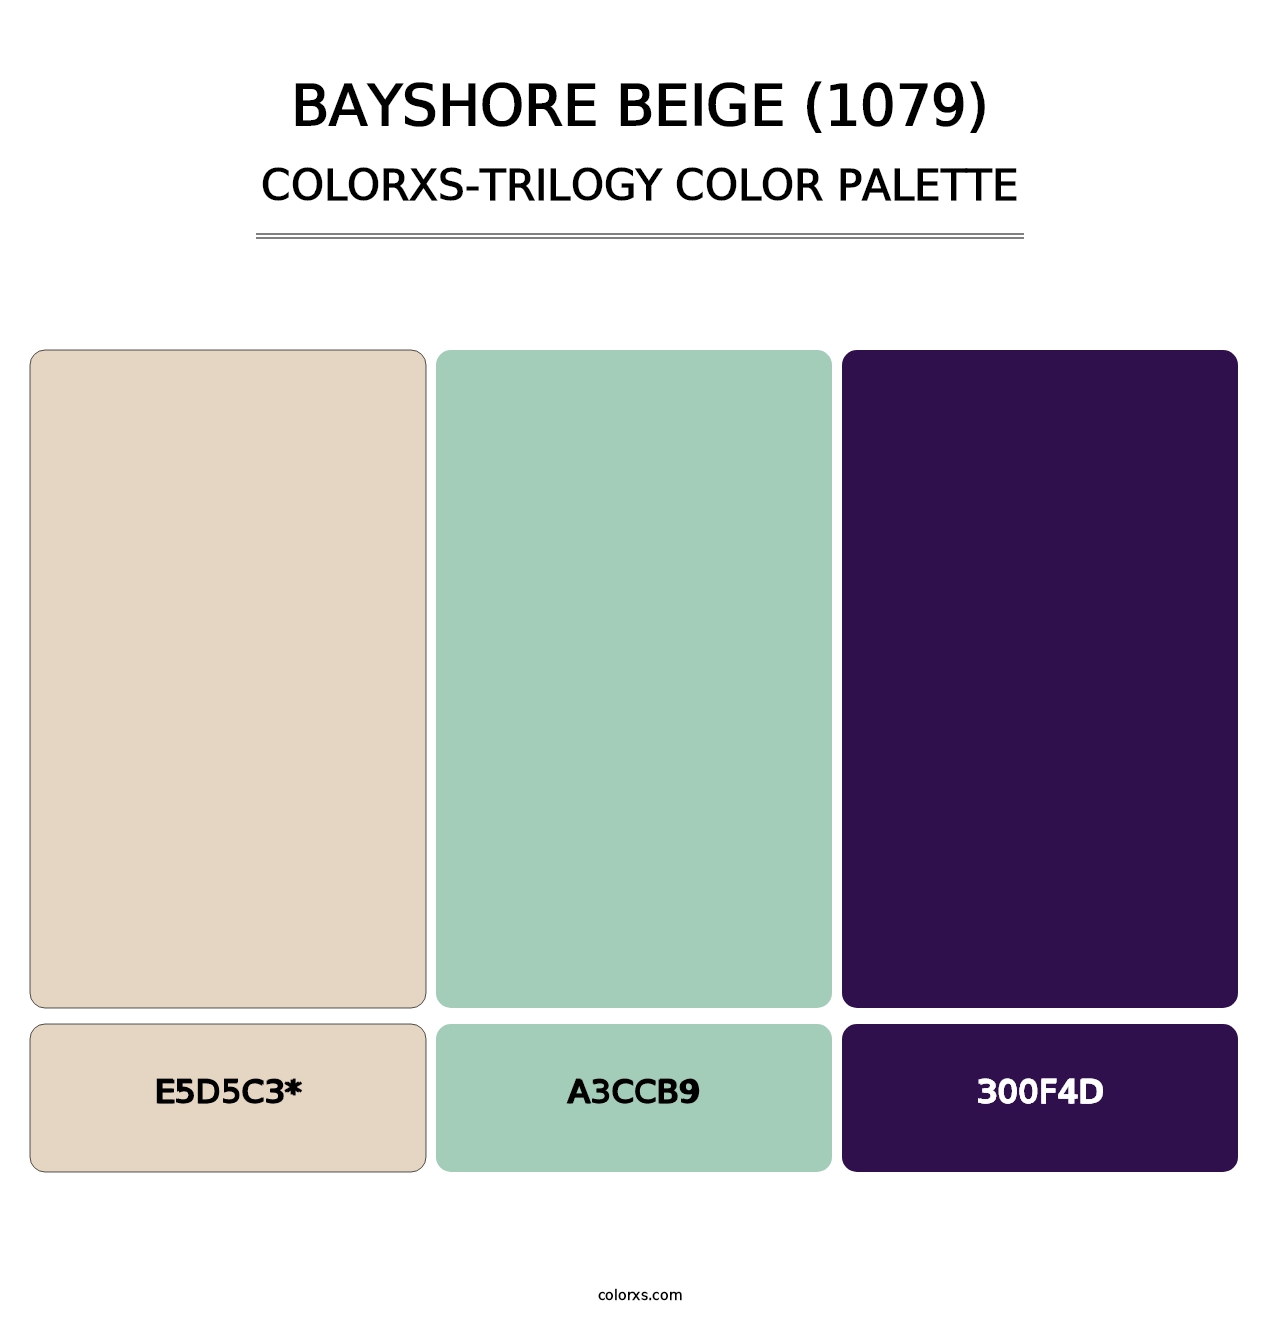 Bayshore Beige (1079) - Colorxs Trilogy Palette